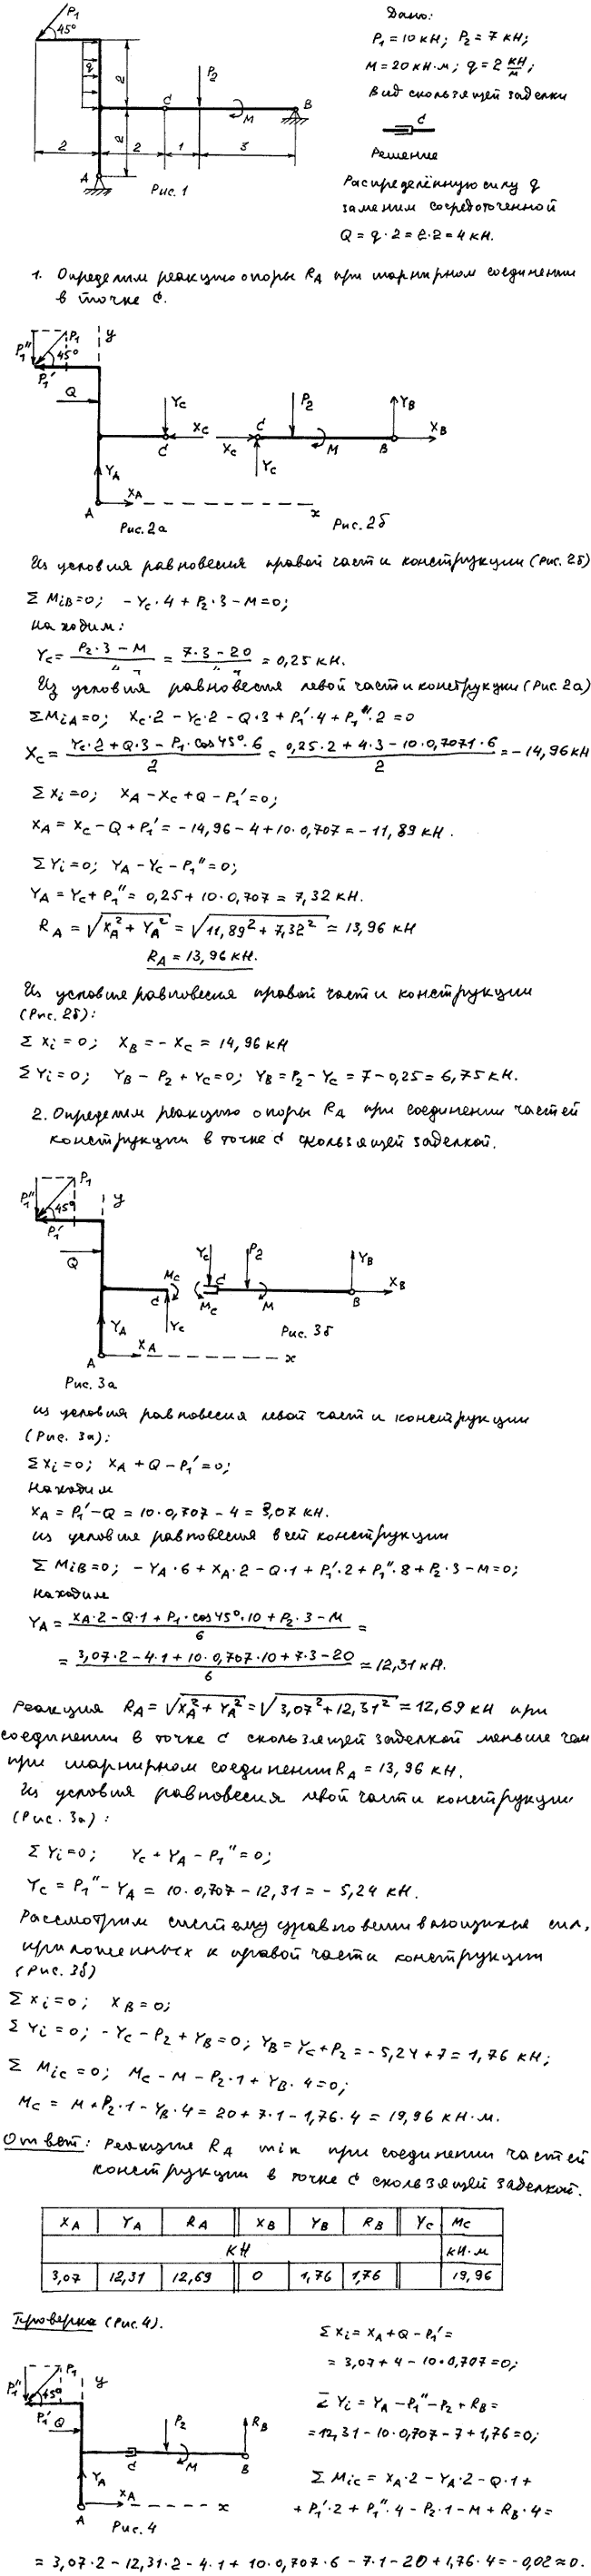 Задание C3 вариант 21. P1=10 кН; P2=7 кН; M=20 кН*м; q=2 кН/м; исследуемая реакция RA; вид скользящей заделки